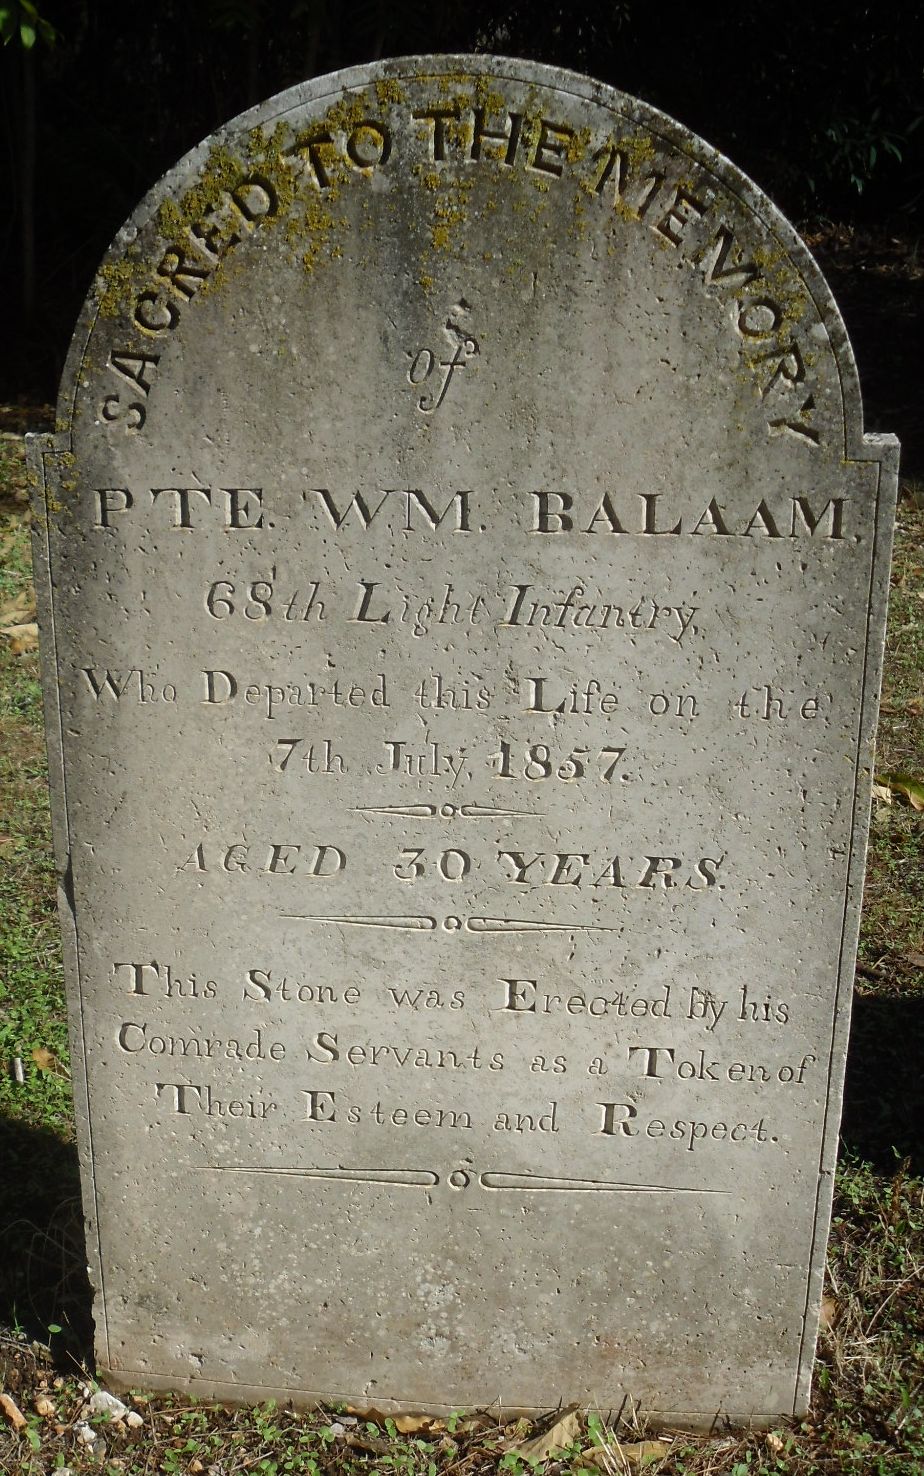 William Balaam